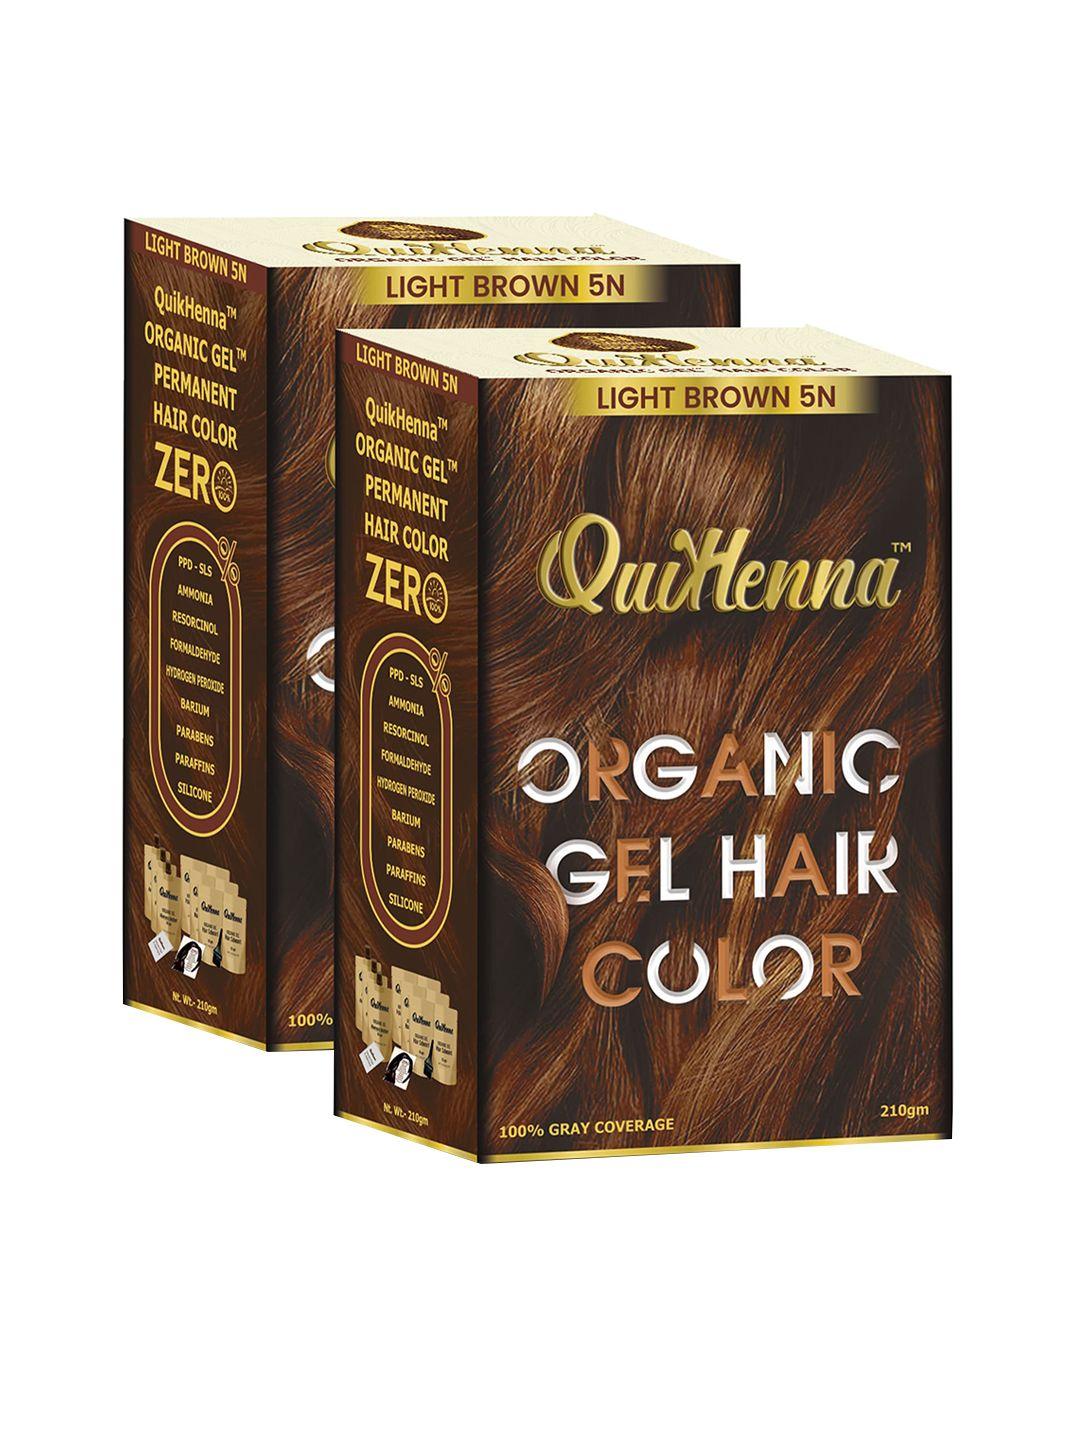 quikhenna set of 2 organic gel ppd & ammonia free hair colour 210gm each - light brown 5n